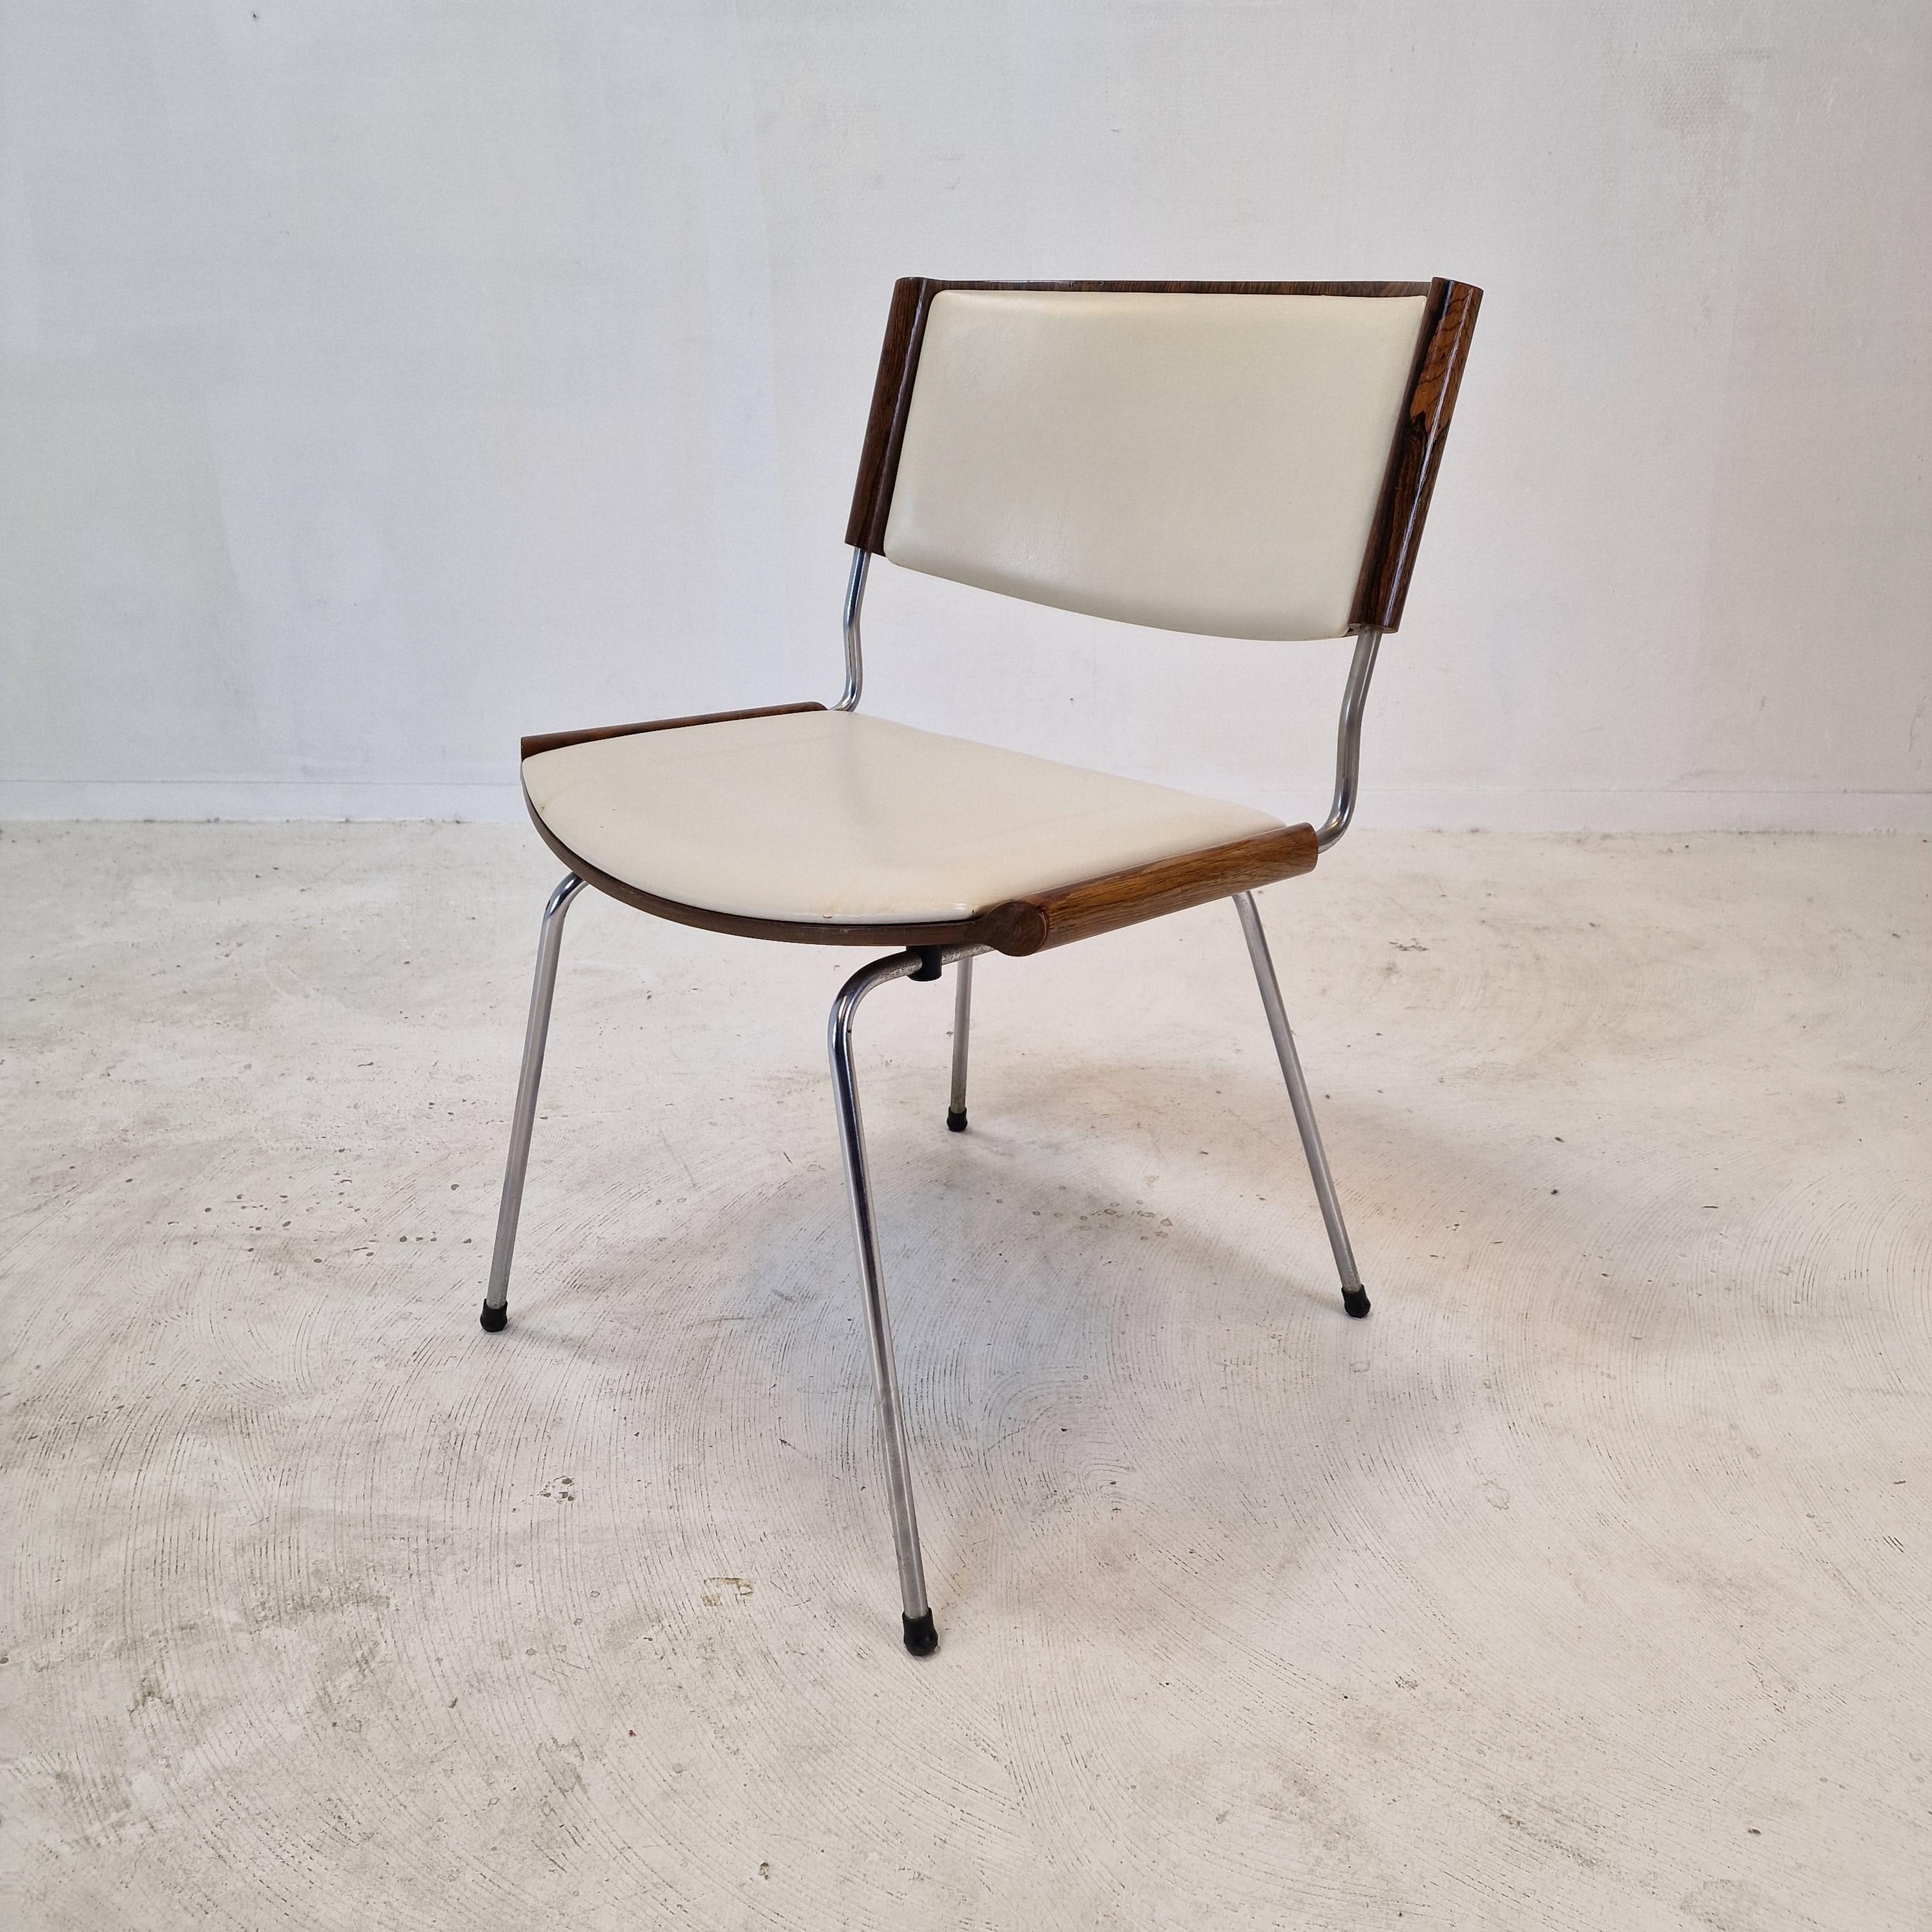 
Satz von 4 Badminton ND 150 Esszimmerstühlen von Nanna Ditzel für Kolds Savvaerk, Dänemark.
Design 1958, Produktion in den 1960er Jahren. 

Bitte beachten Sie die sehr schöne Sitzfläche und Rückenlehne aus Nussbaumholz.

Diese wunderbaren Stühle